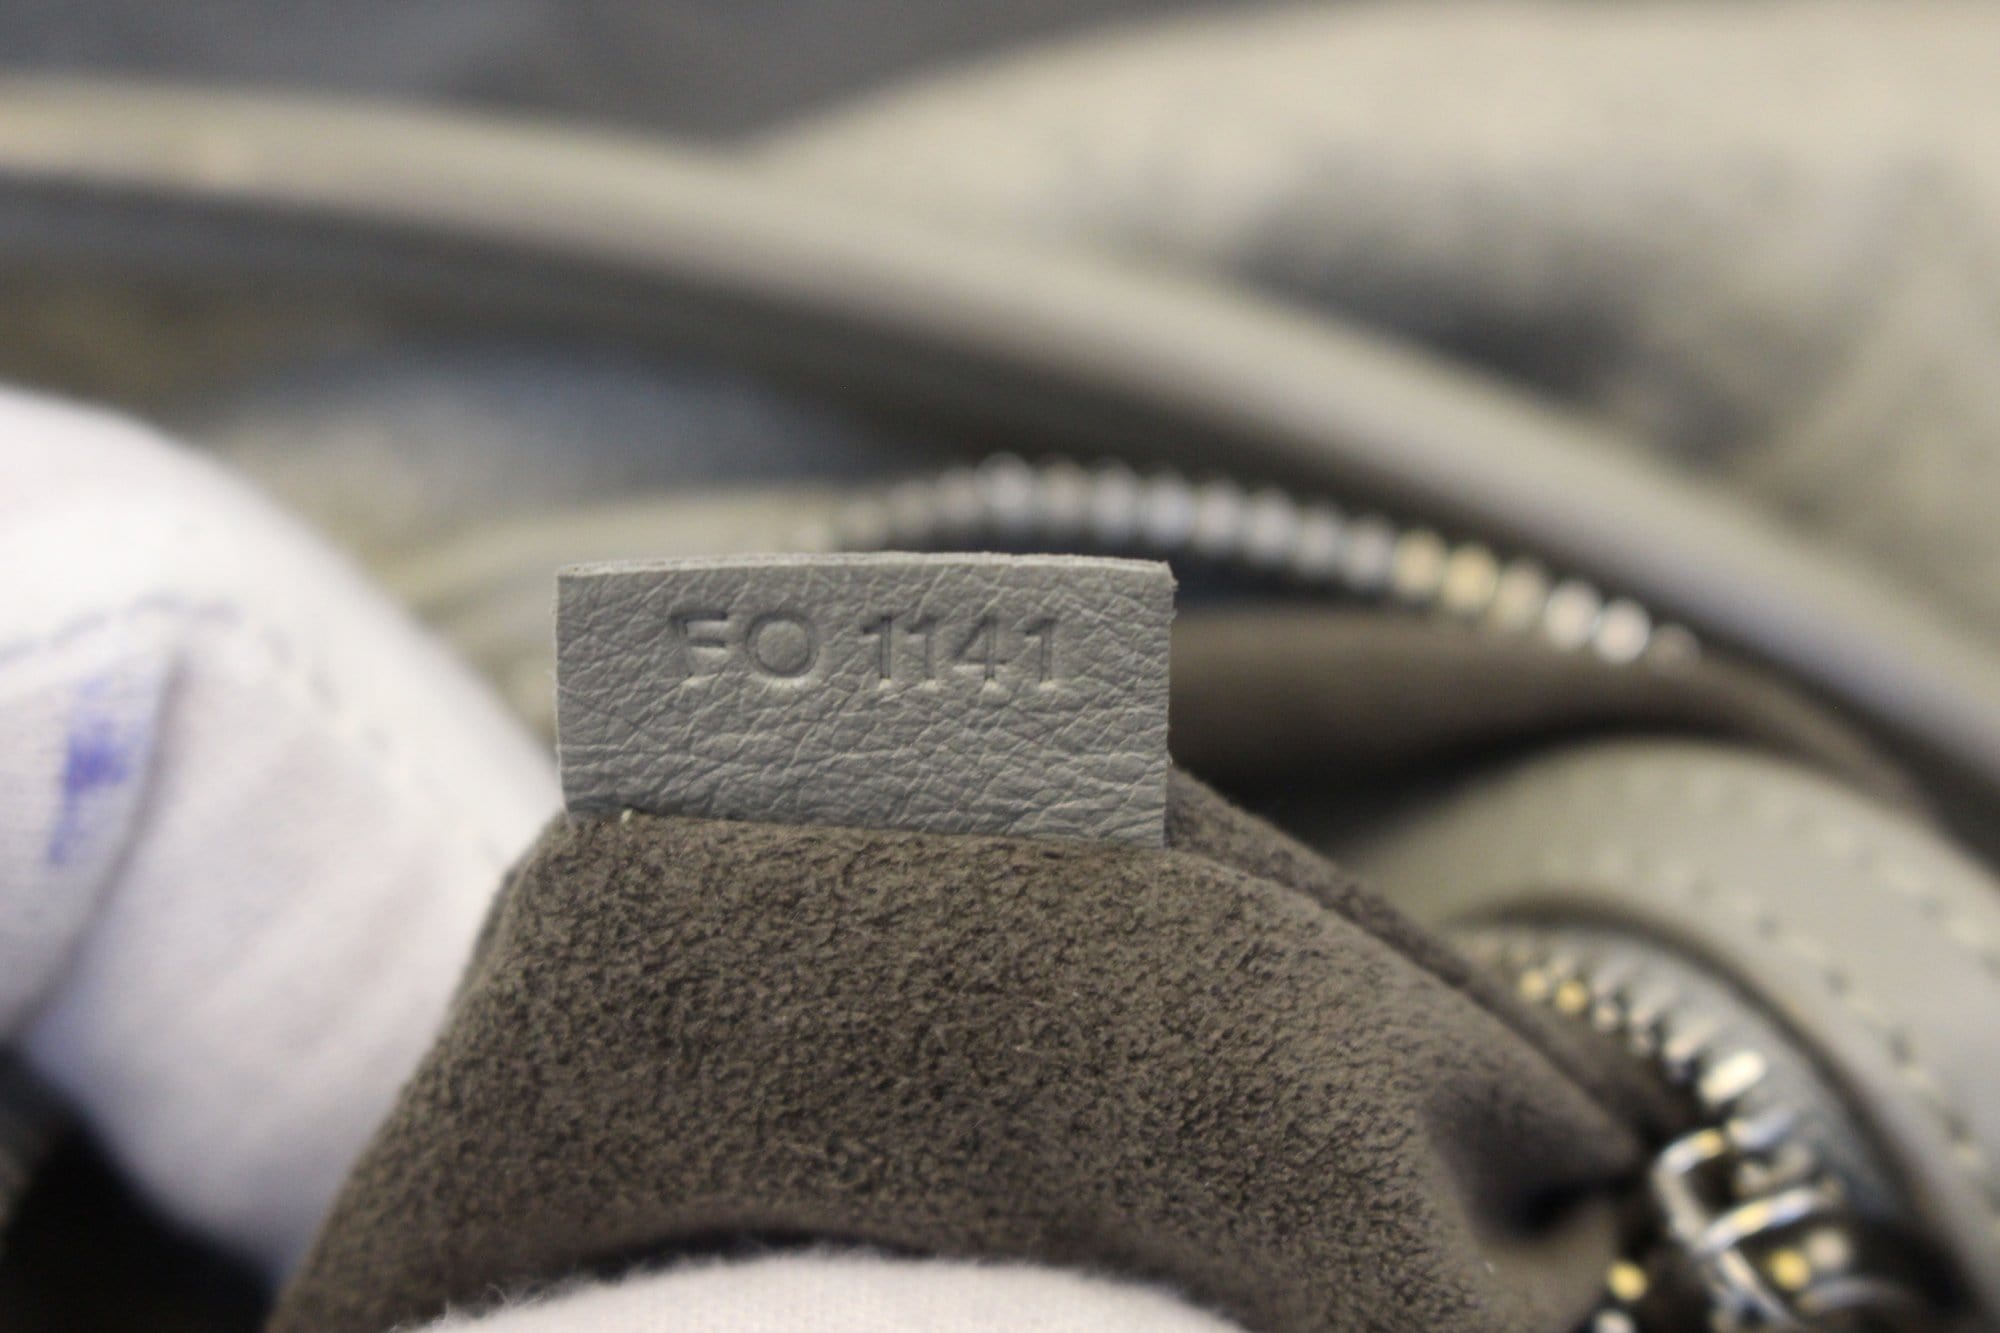 Louis Vuitton - Ixia PM Antheia Leather Noir